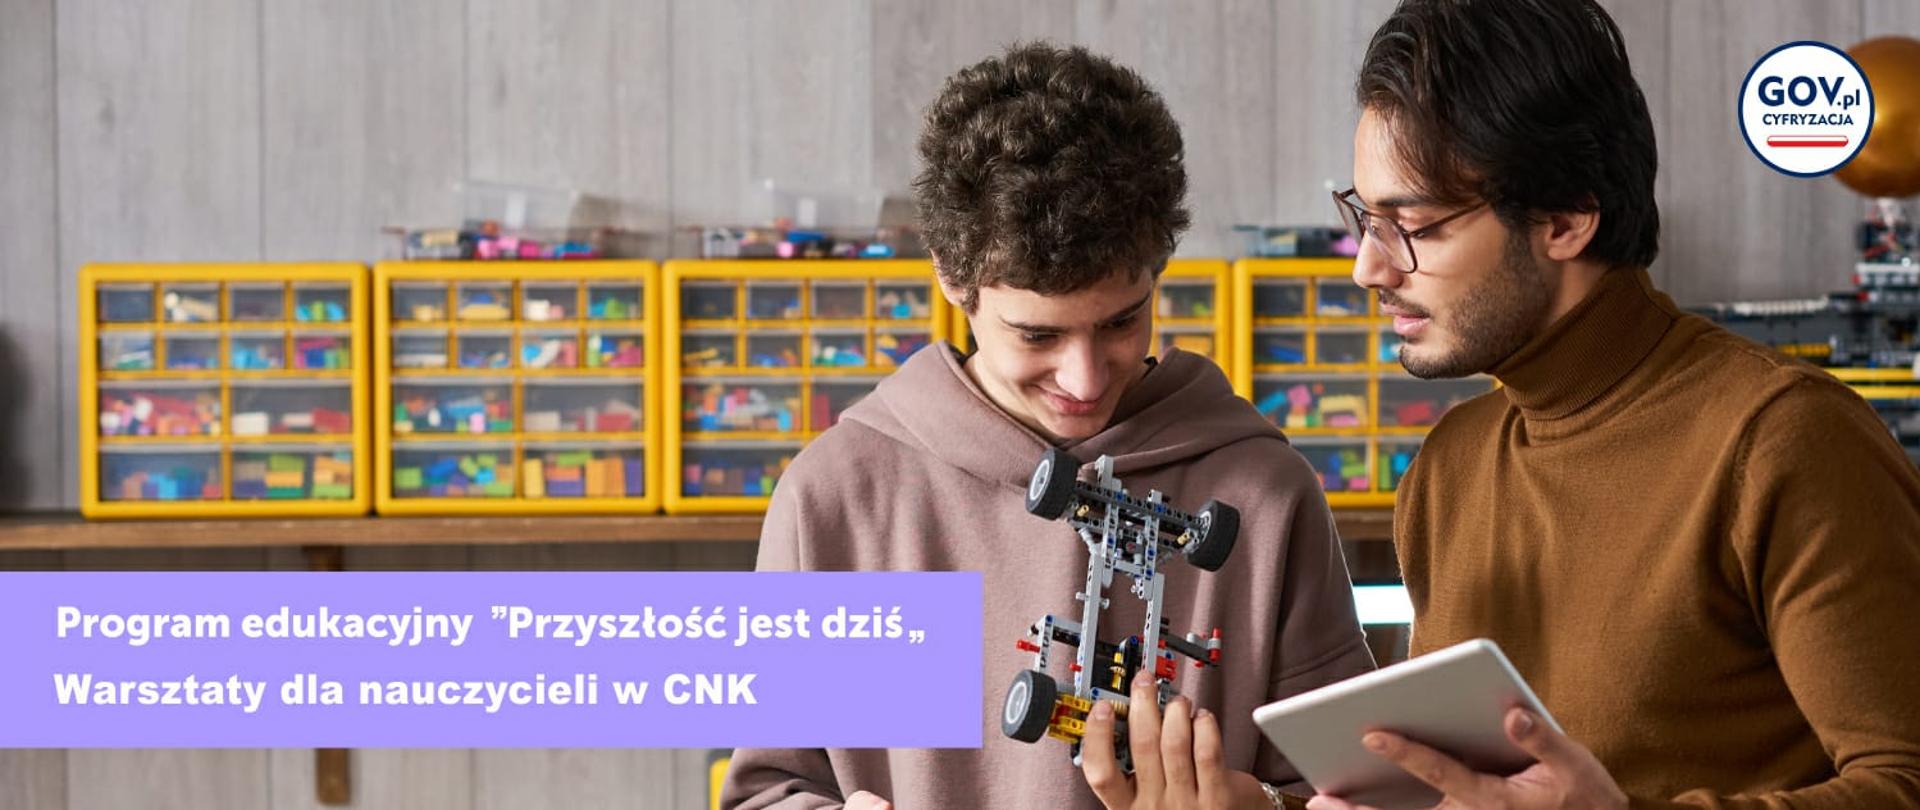 Program edukacyjny "Przyszłość jest dziś" - Warszawy dla nauczycieli w CNK. 